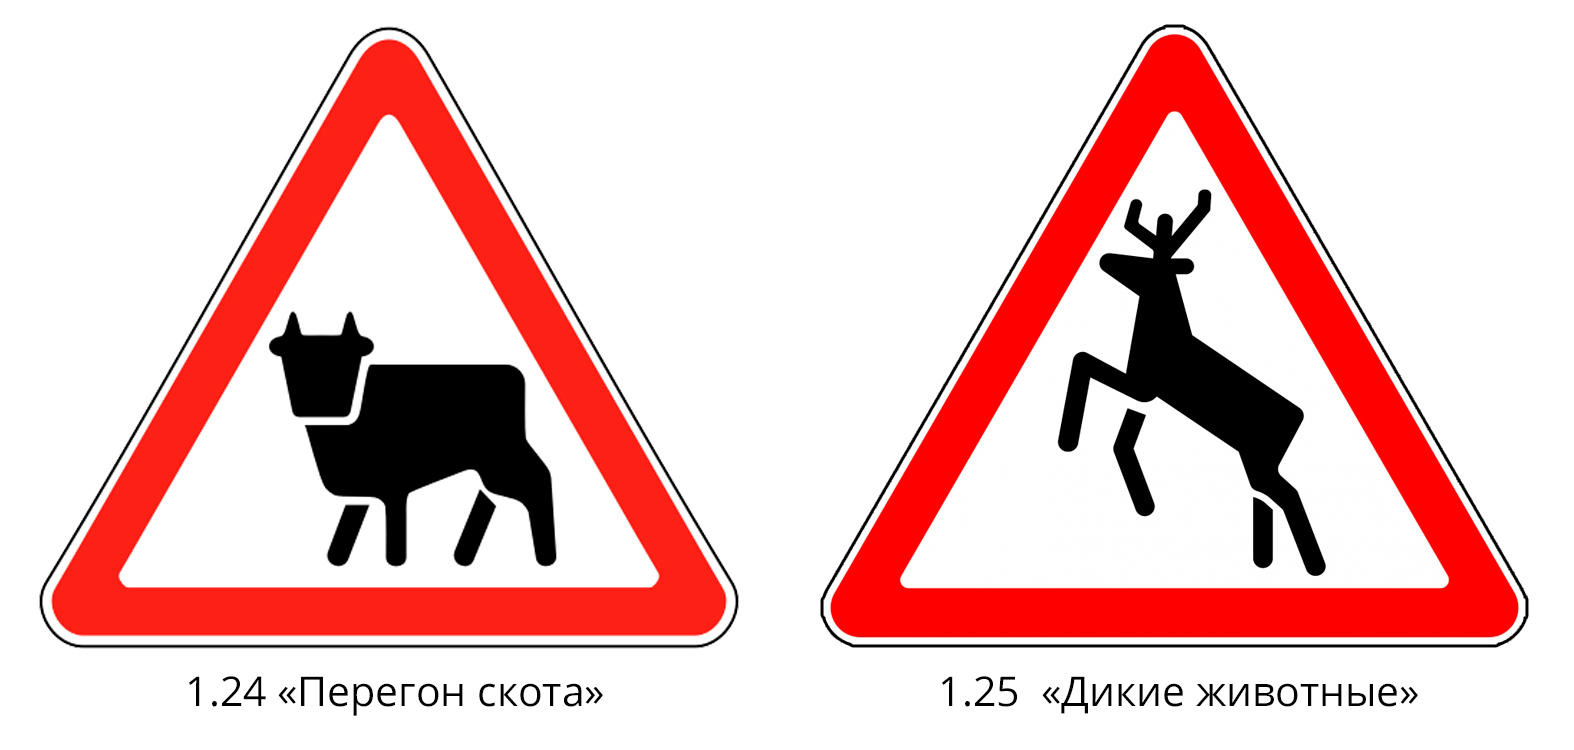 Что означает знак оленя. Знак 1.26. Перегон скота. Дорожный знак 1.26 перегон скота. Знак ПДД перегон скота. Дорожный знак животные.